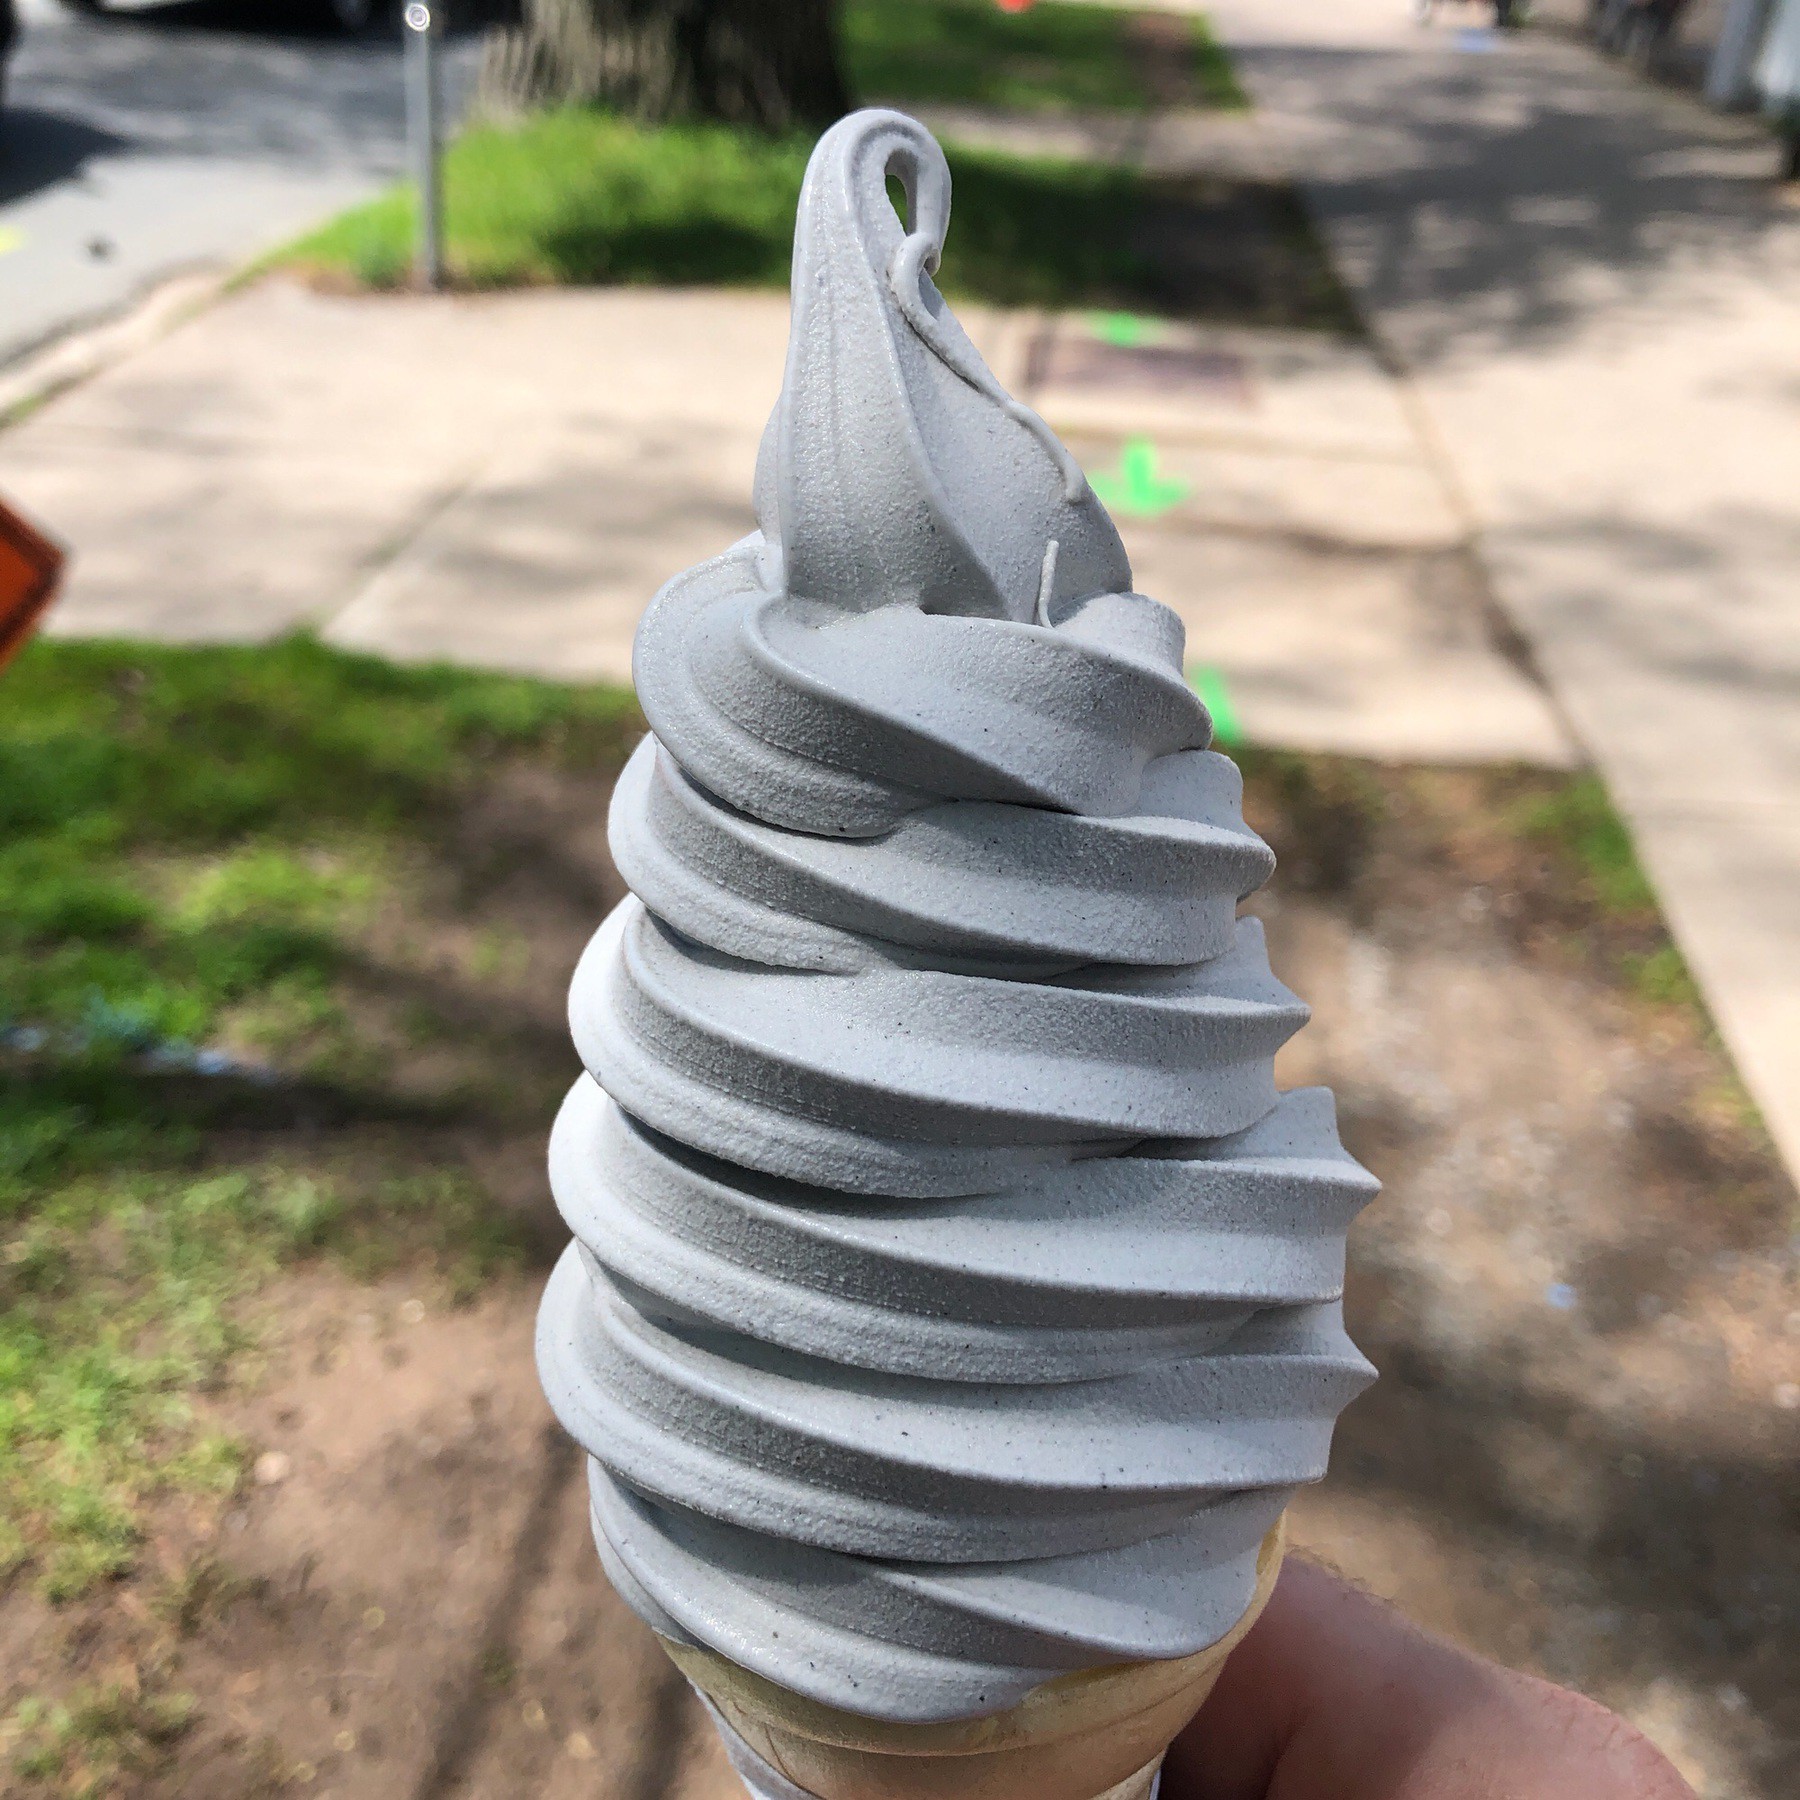 Soft serve ice cream in cone.